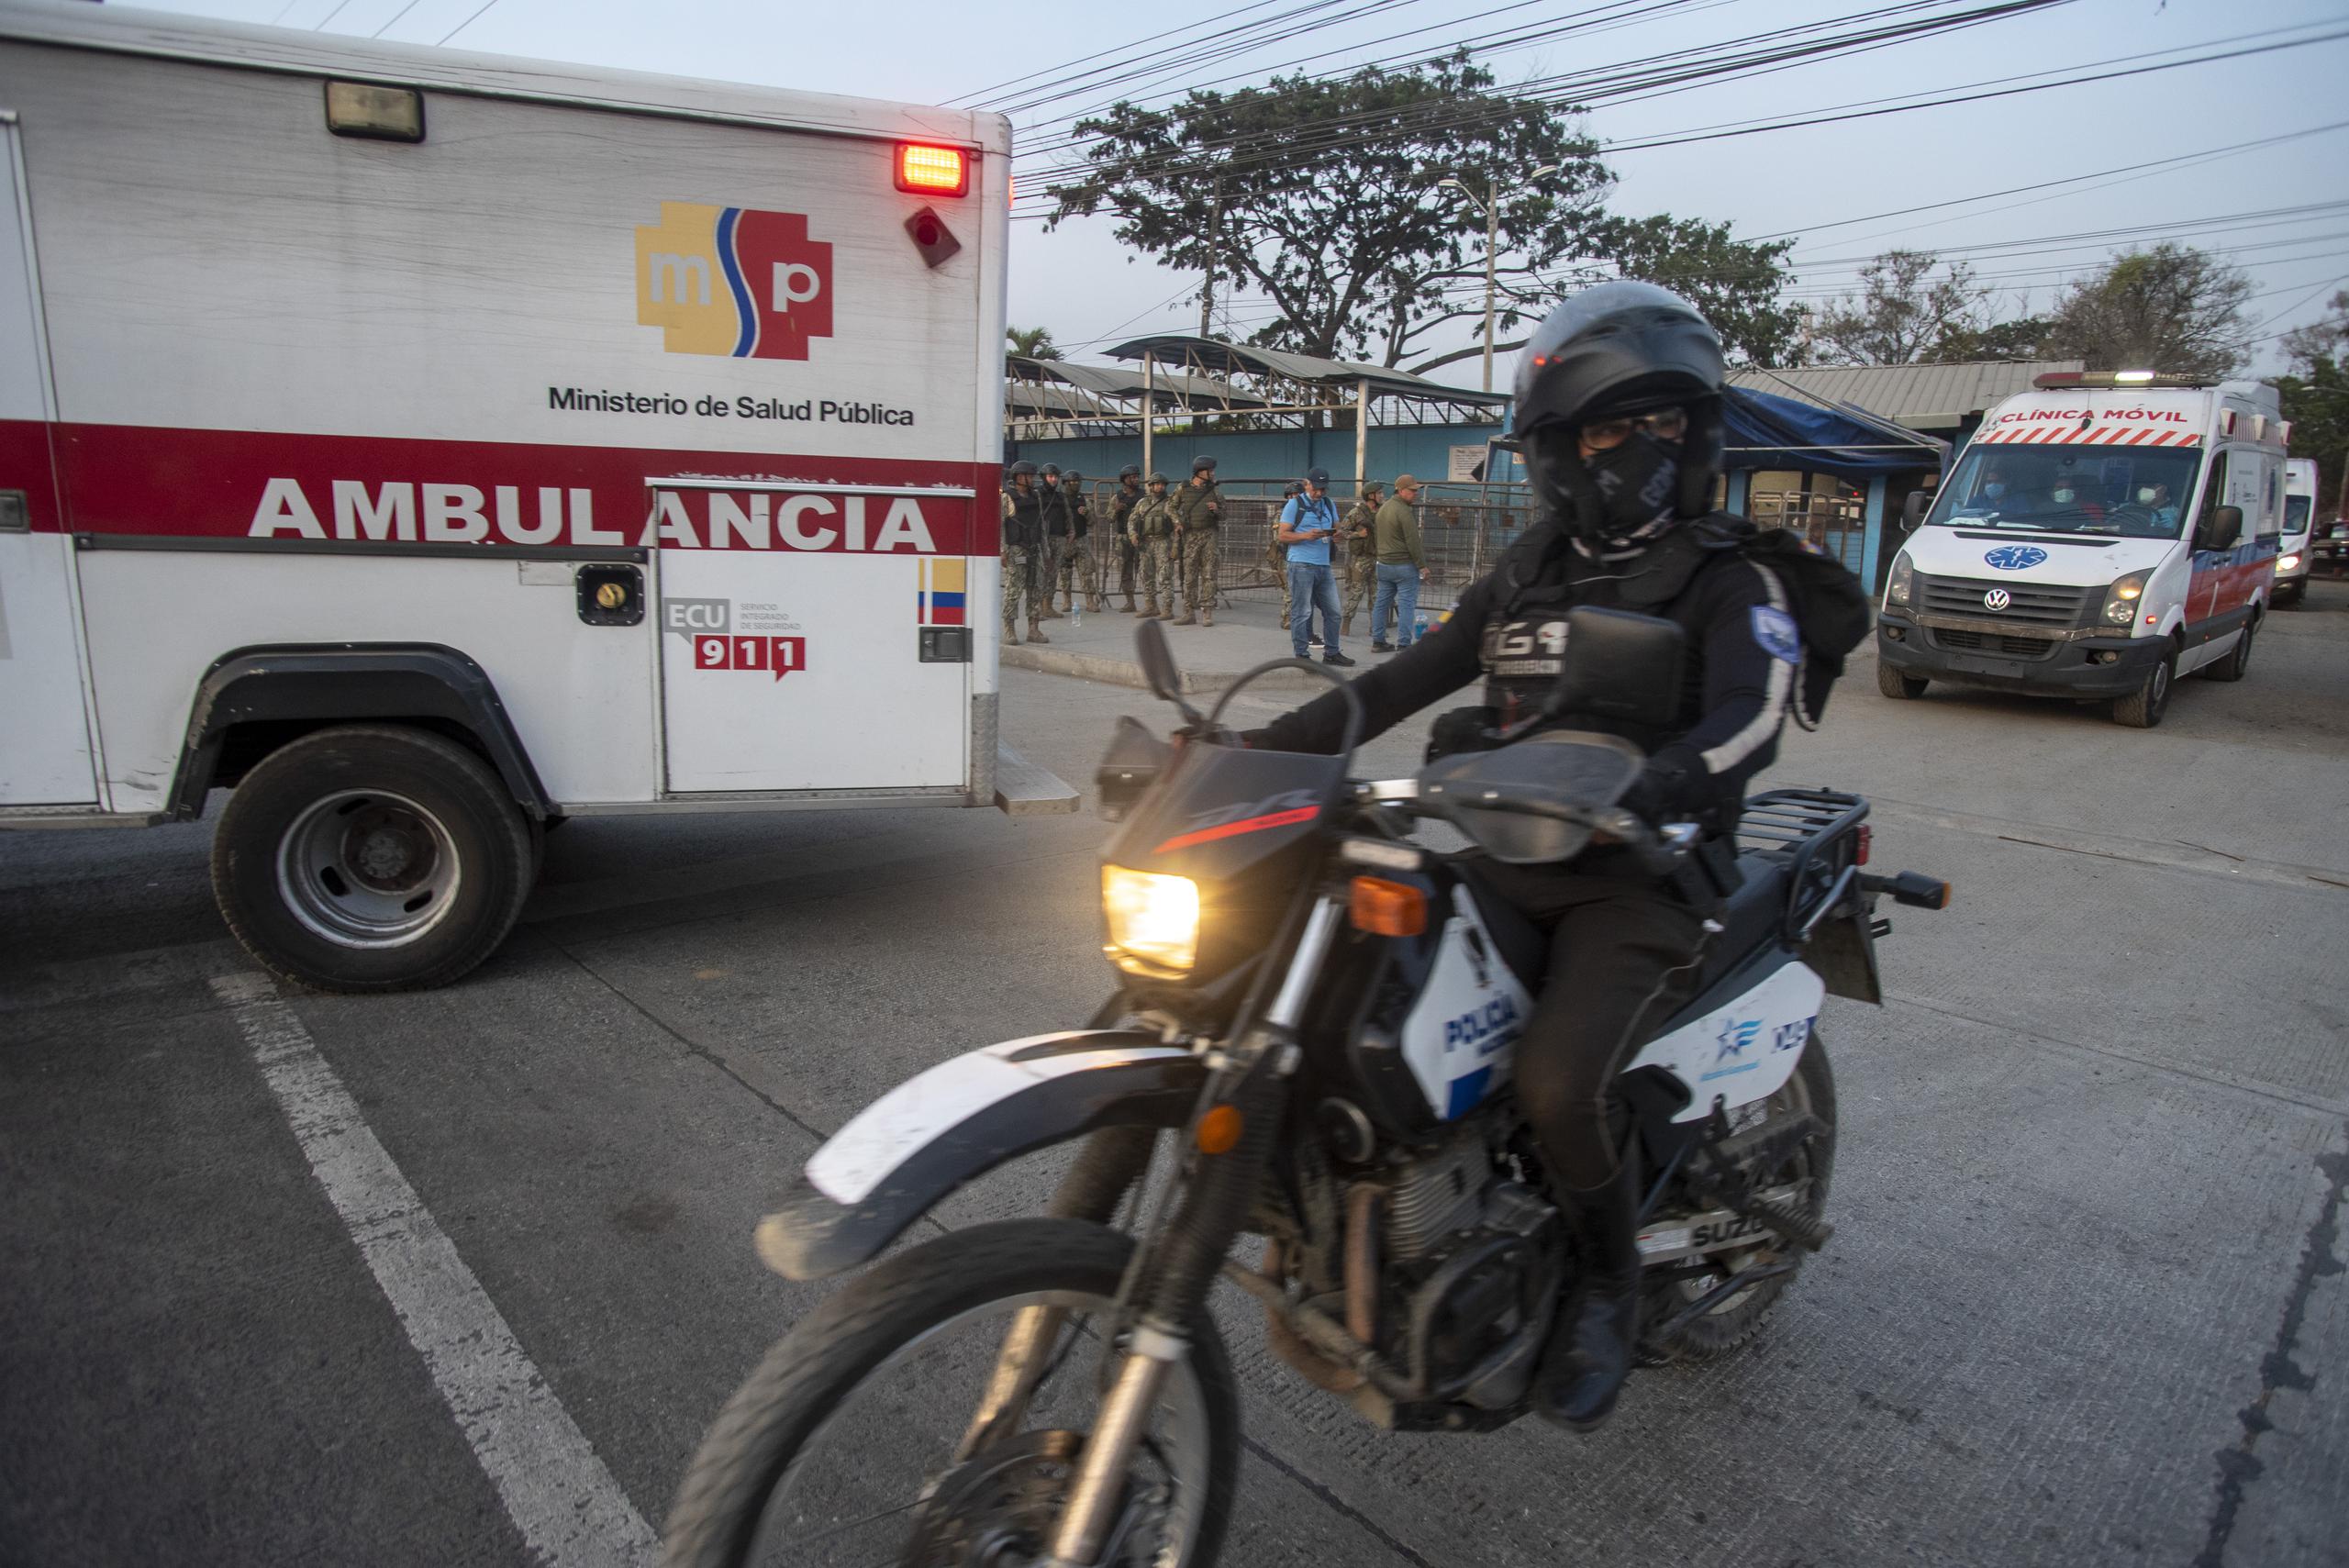 Ambulancias salen de la penitenciaría Litoral donde se presentó una riña entre policías y reos en Guayaquil, en Ecuador. (Foto de archivo/EFE/Mauricio Torres)